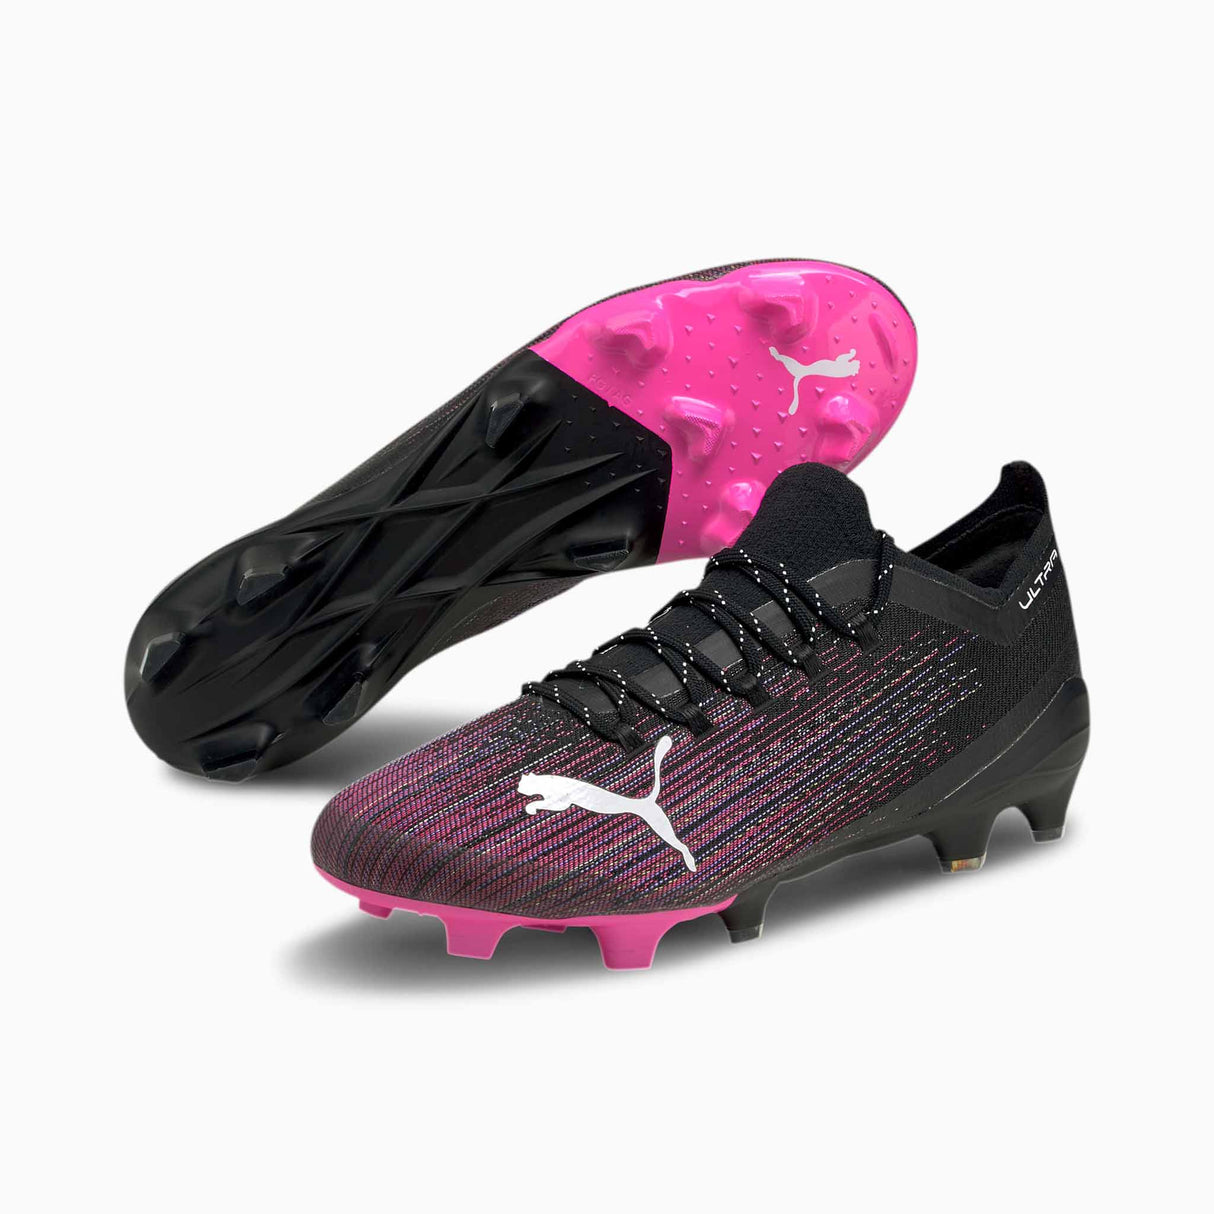 Souliers de soccer Puma Ultra 1.1 FG rose et noir paire